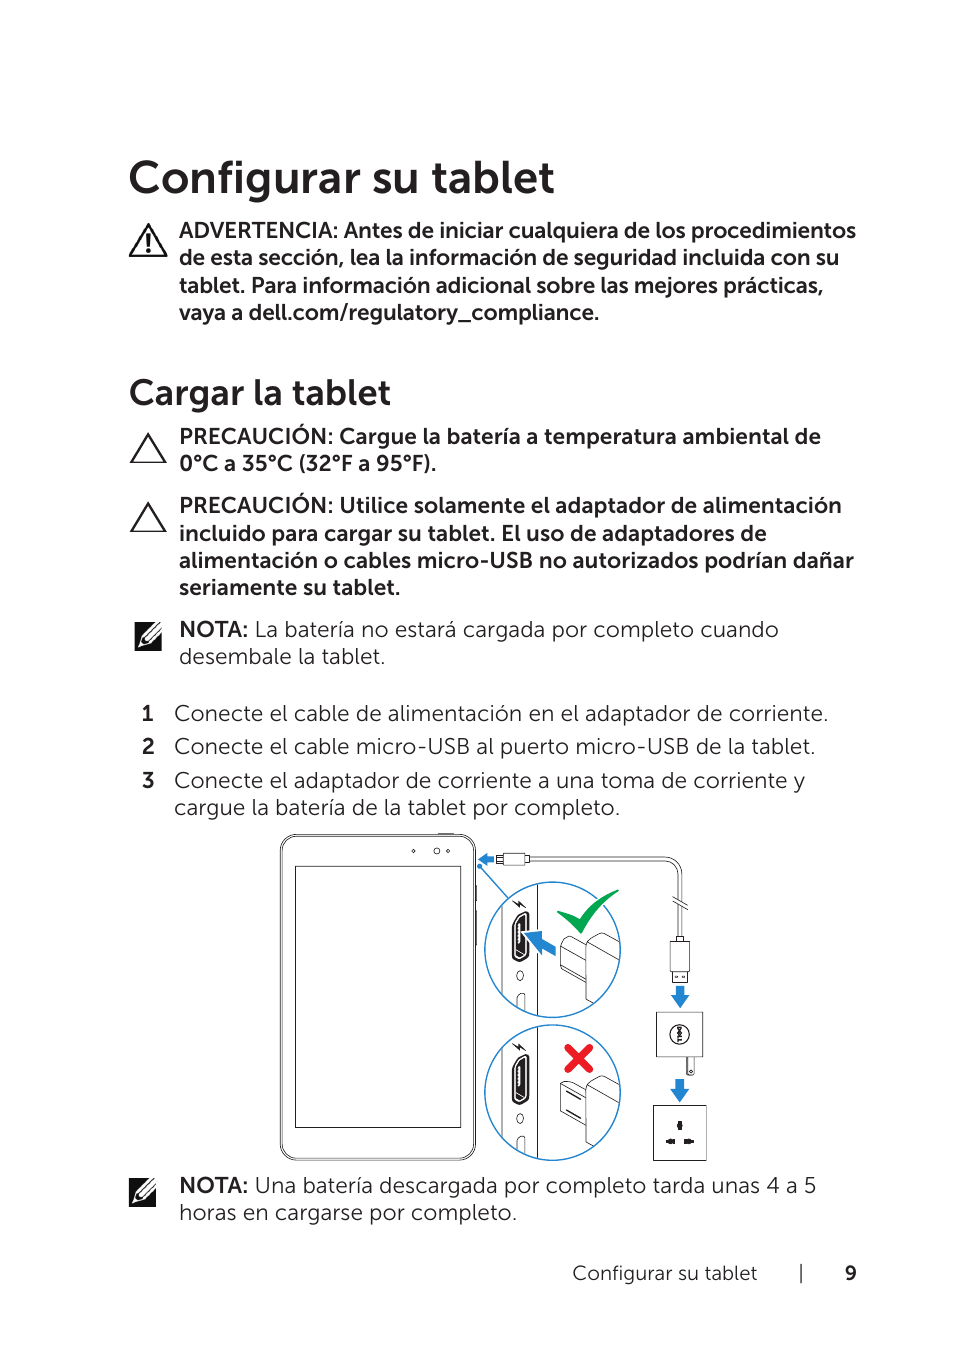 Configurar su tablet, Cargar la tablet | Dell Venue 8 Pro (3845, Late 2014) Manual del usuario | Página 9 / 39